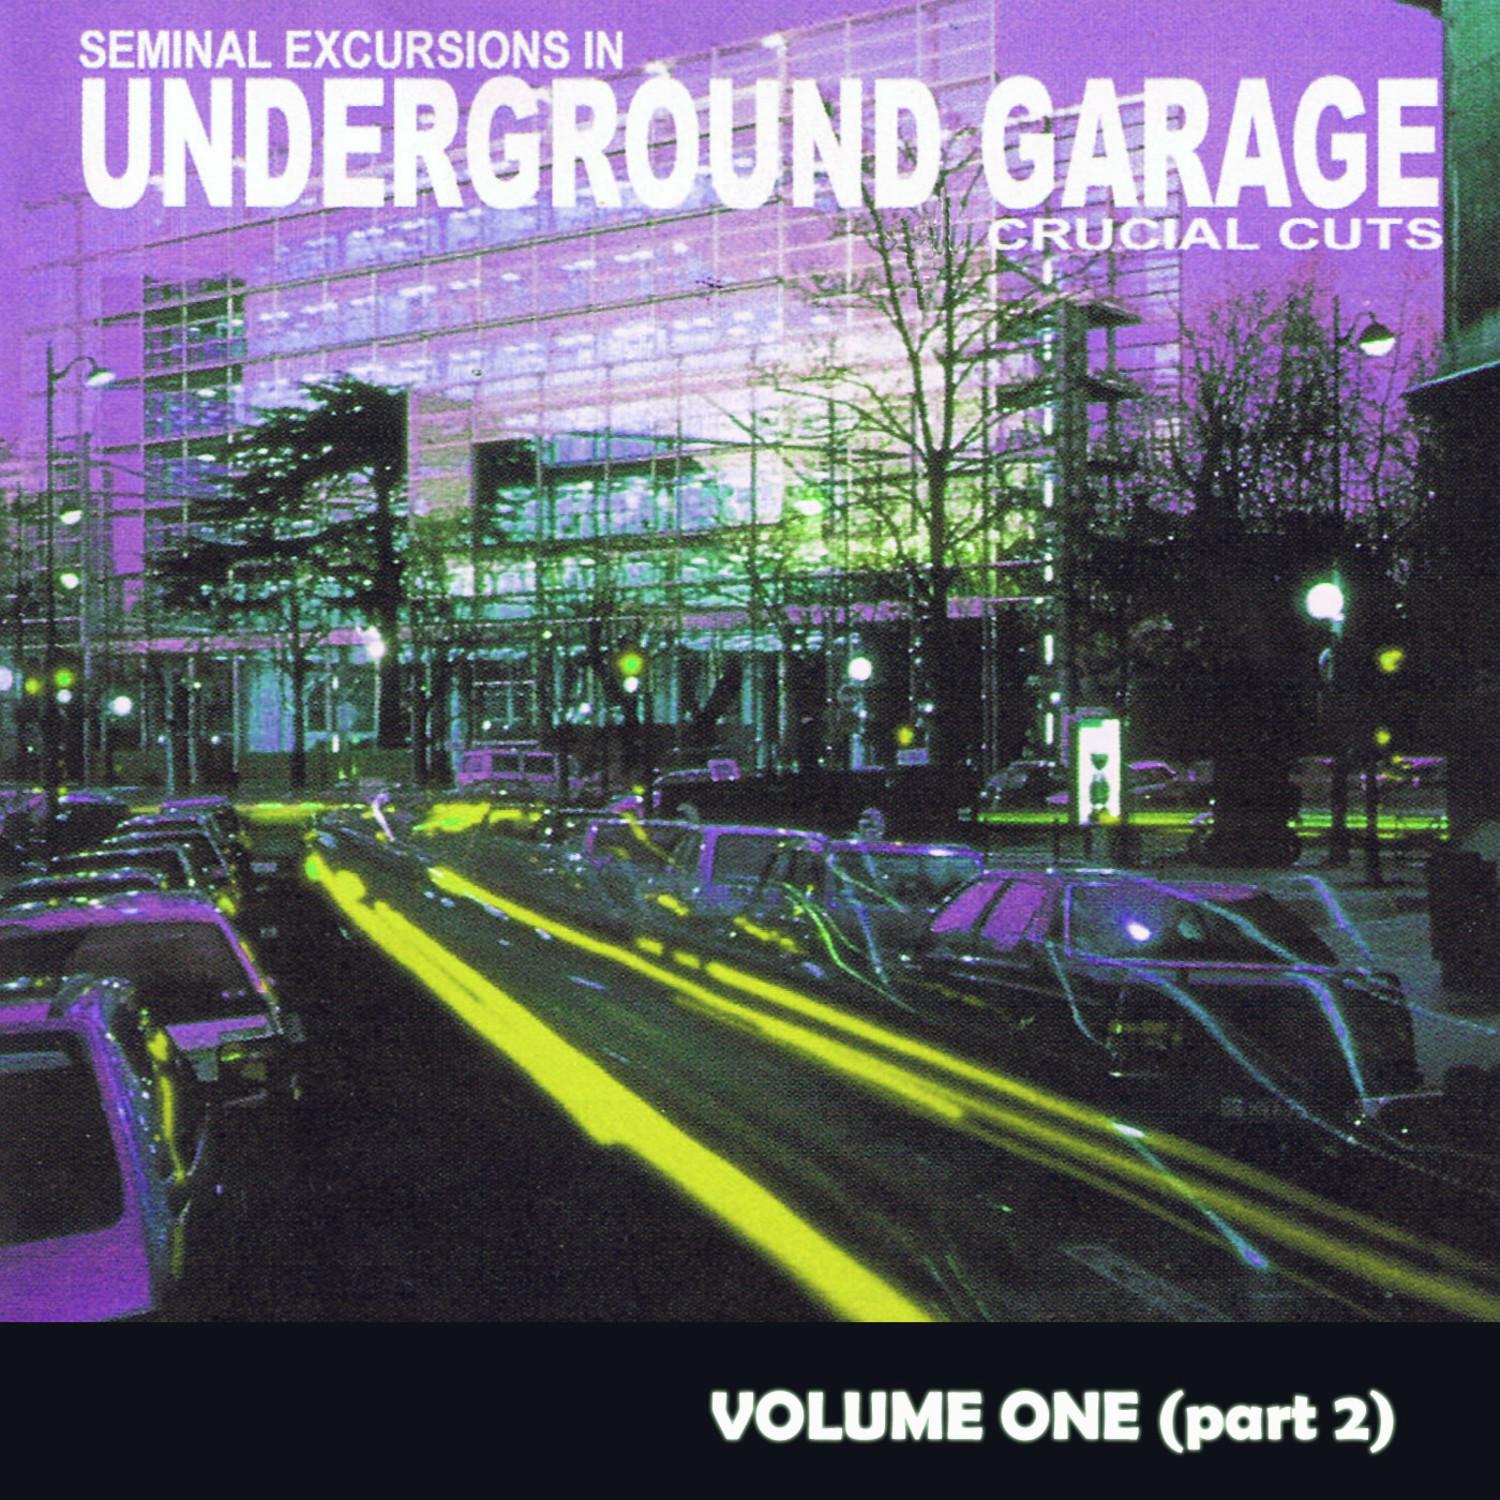 Seminal Excursions In Underground Garage Vol 1 - Part 2